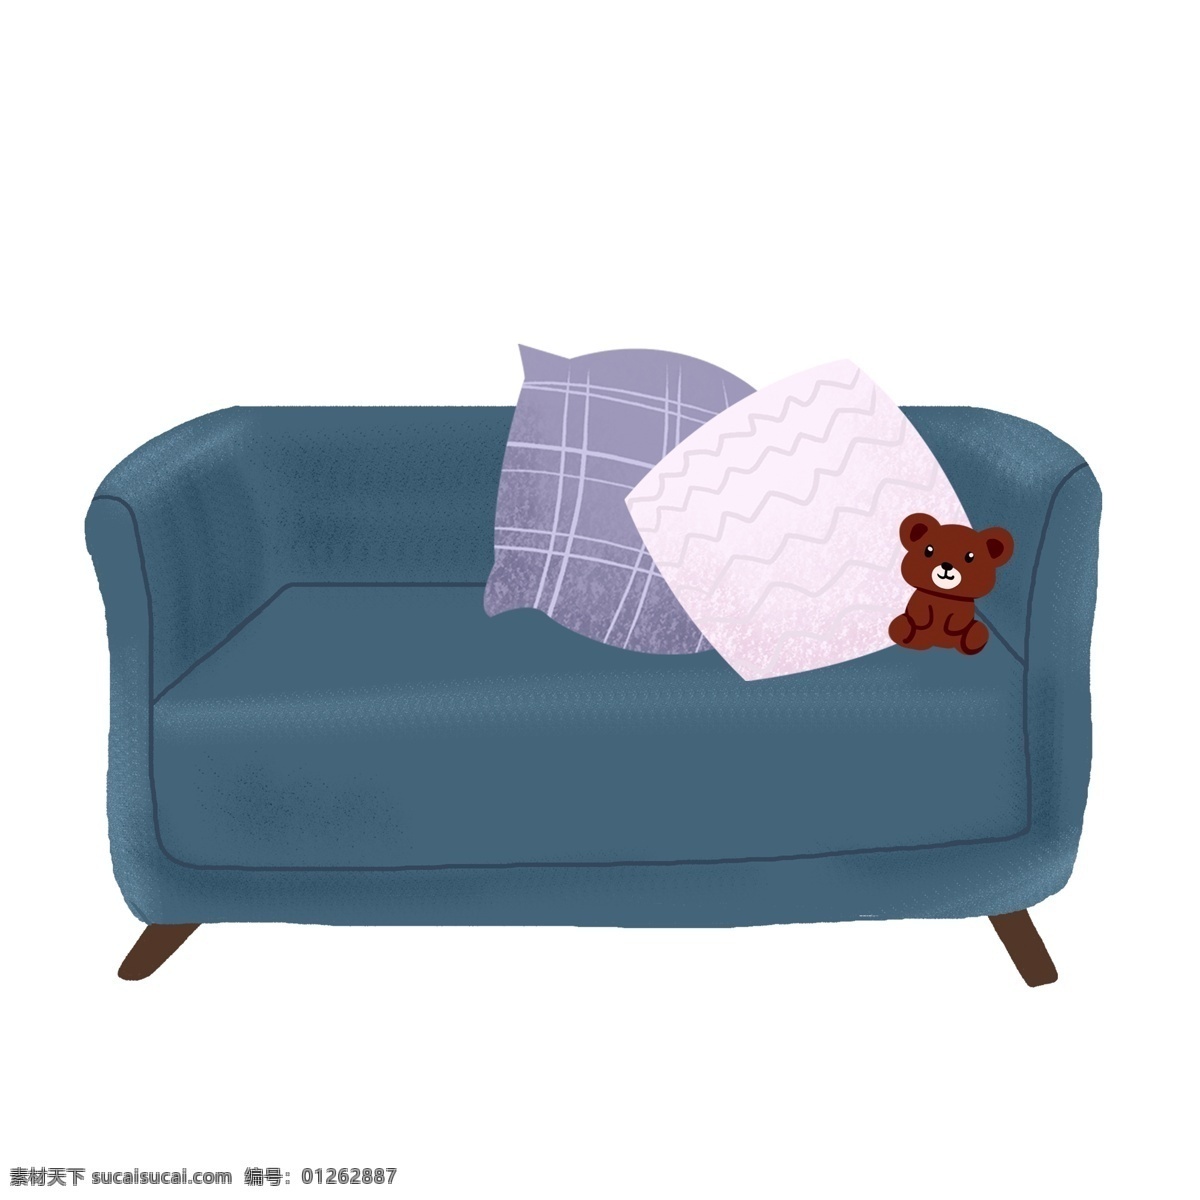 蓝色 家具 沙发 抱枕 元素 卡通沙发 小熊 设计元素 元素设计 创意元素 手绘元素